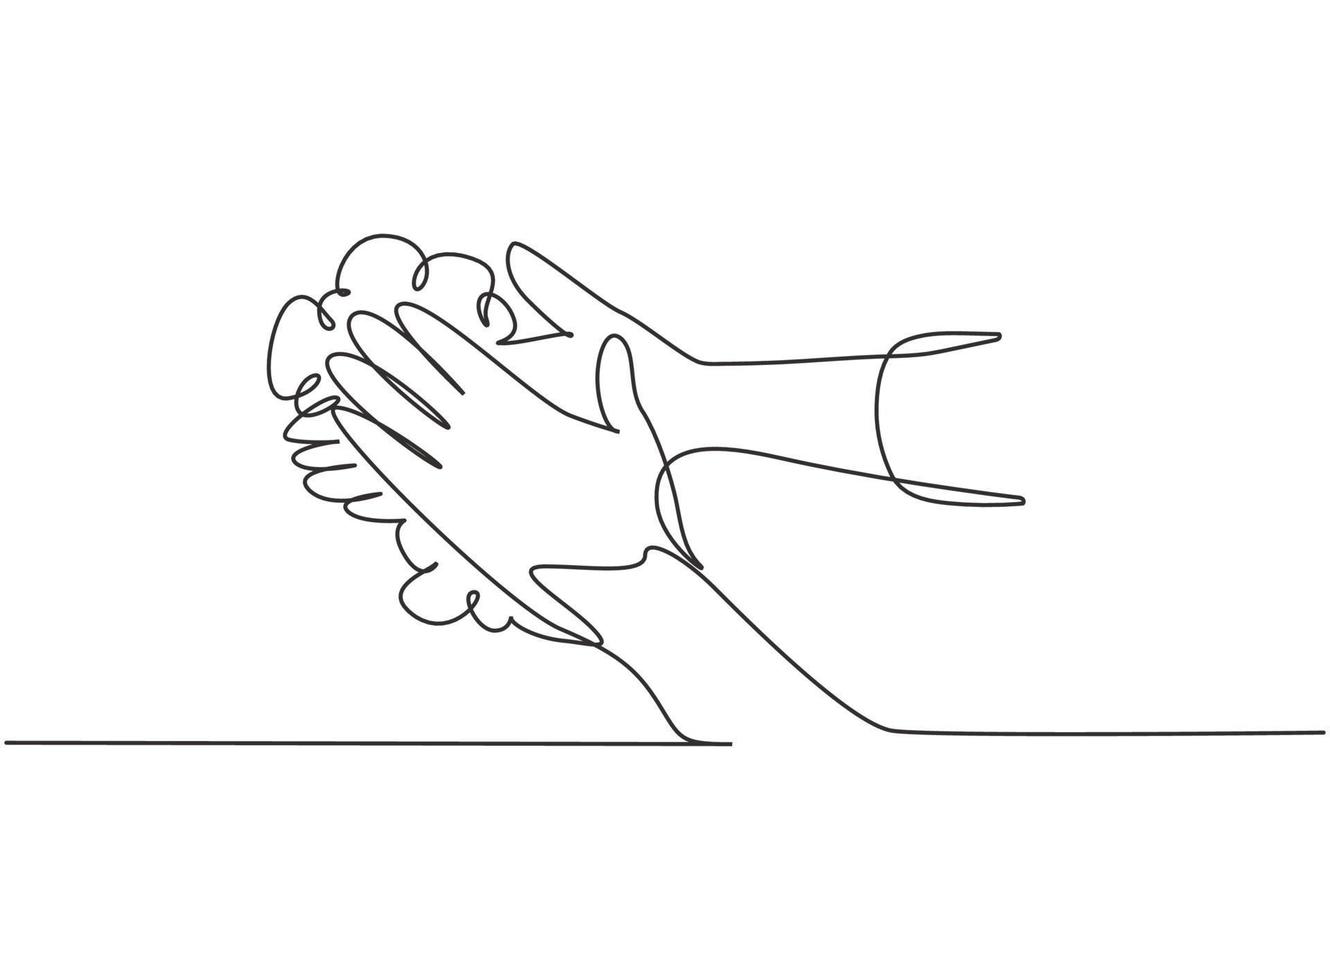 dibujo continuo de una línea doce pasos lavarse las manos frotando las palmas de las manos con agua corriente y jabón. Prevención temprana contra el virus corona. Ilustración gráfica de vector de diseño de dibujo de una sola línea.